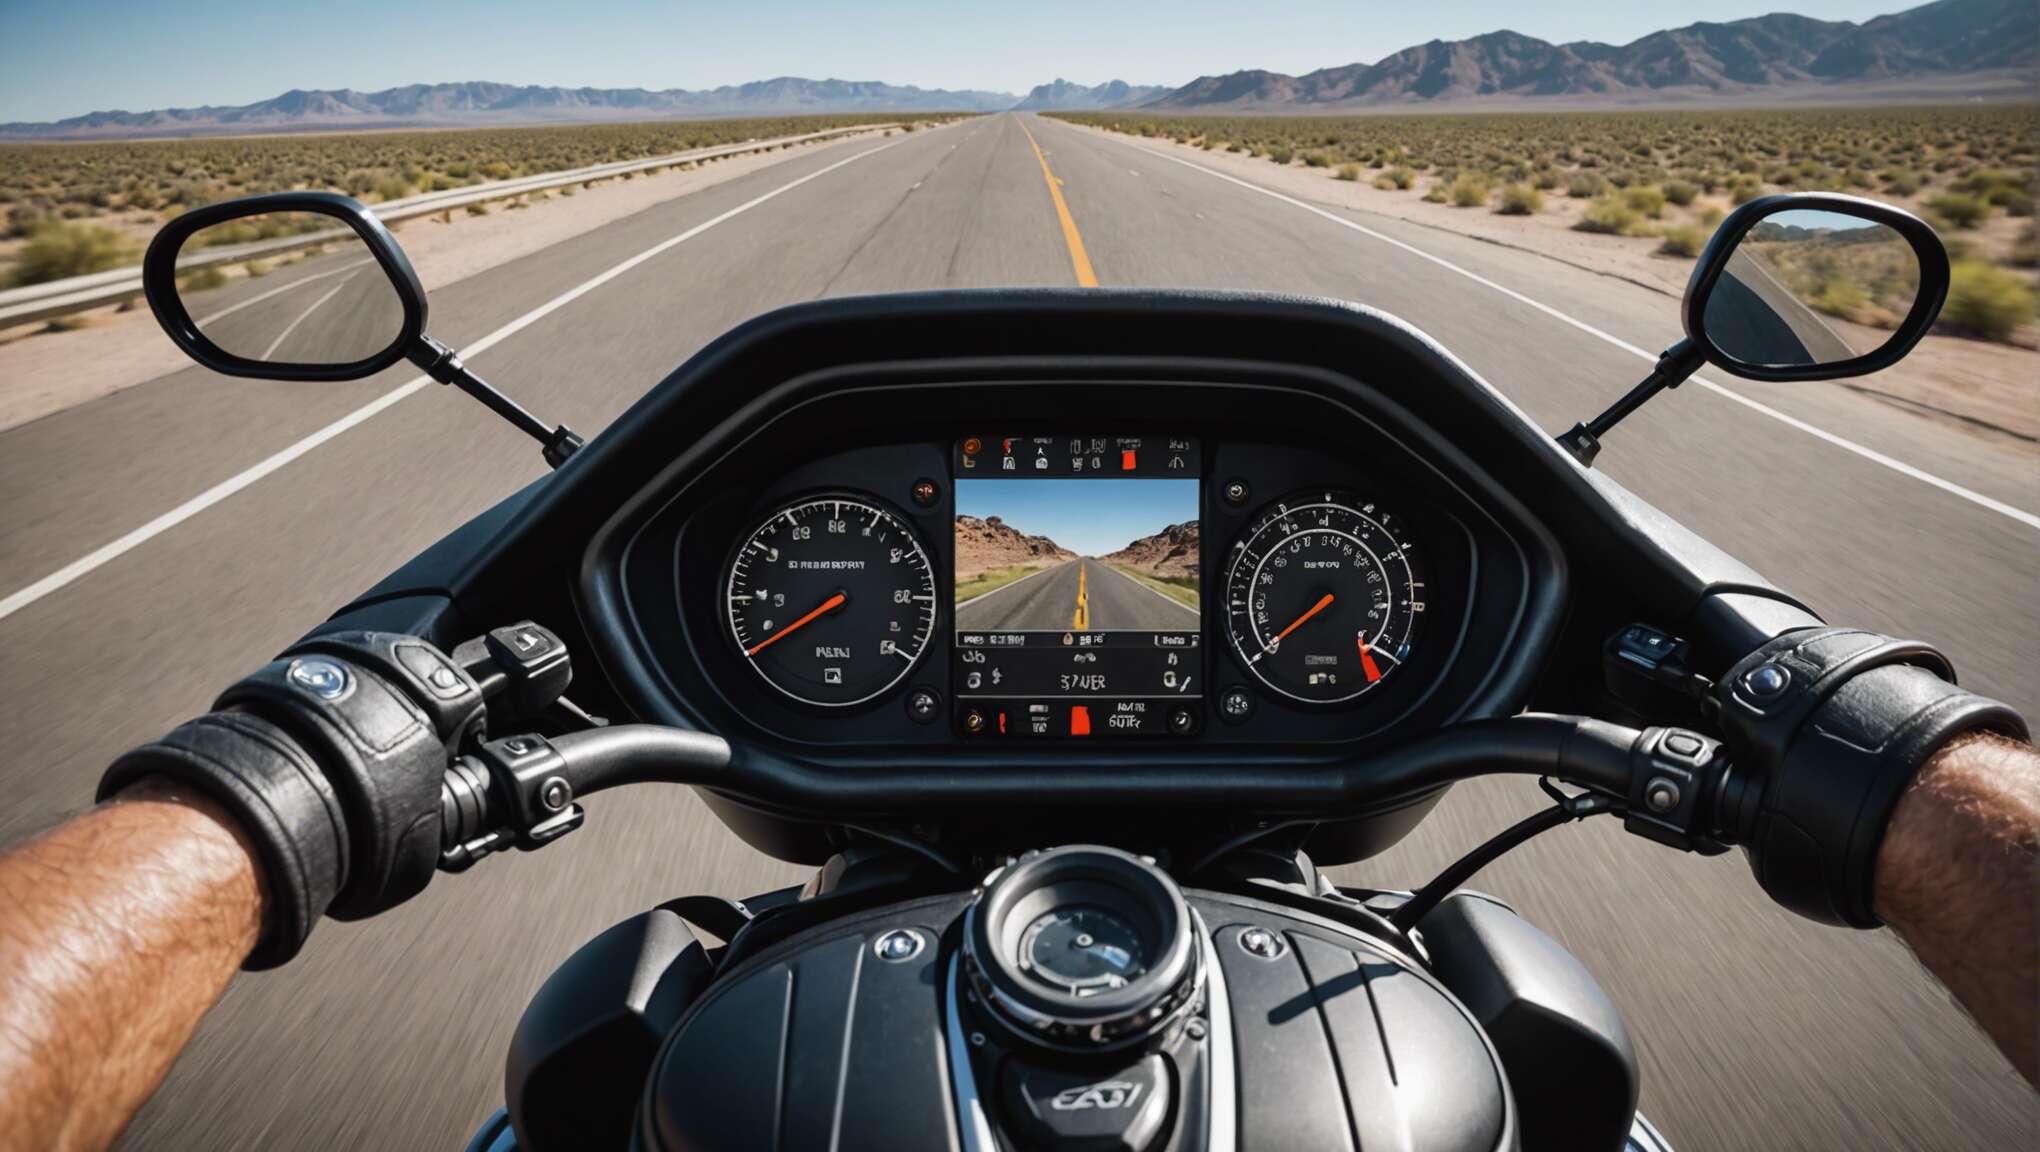 L'importance de l'ergonomie en long voyage à moto